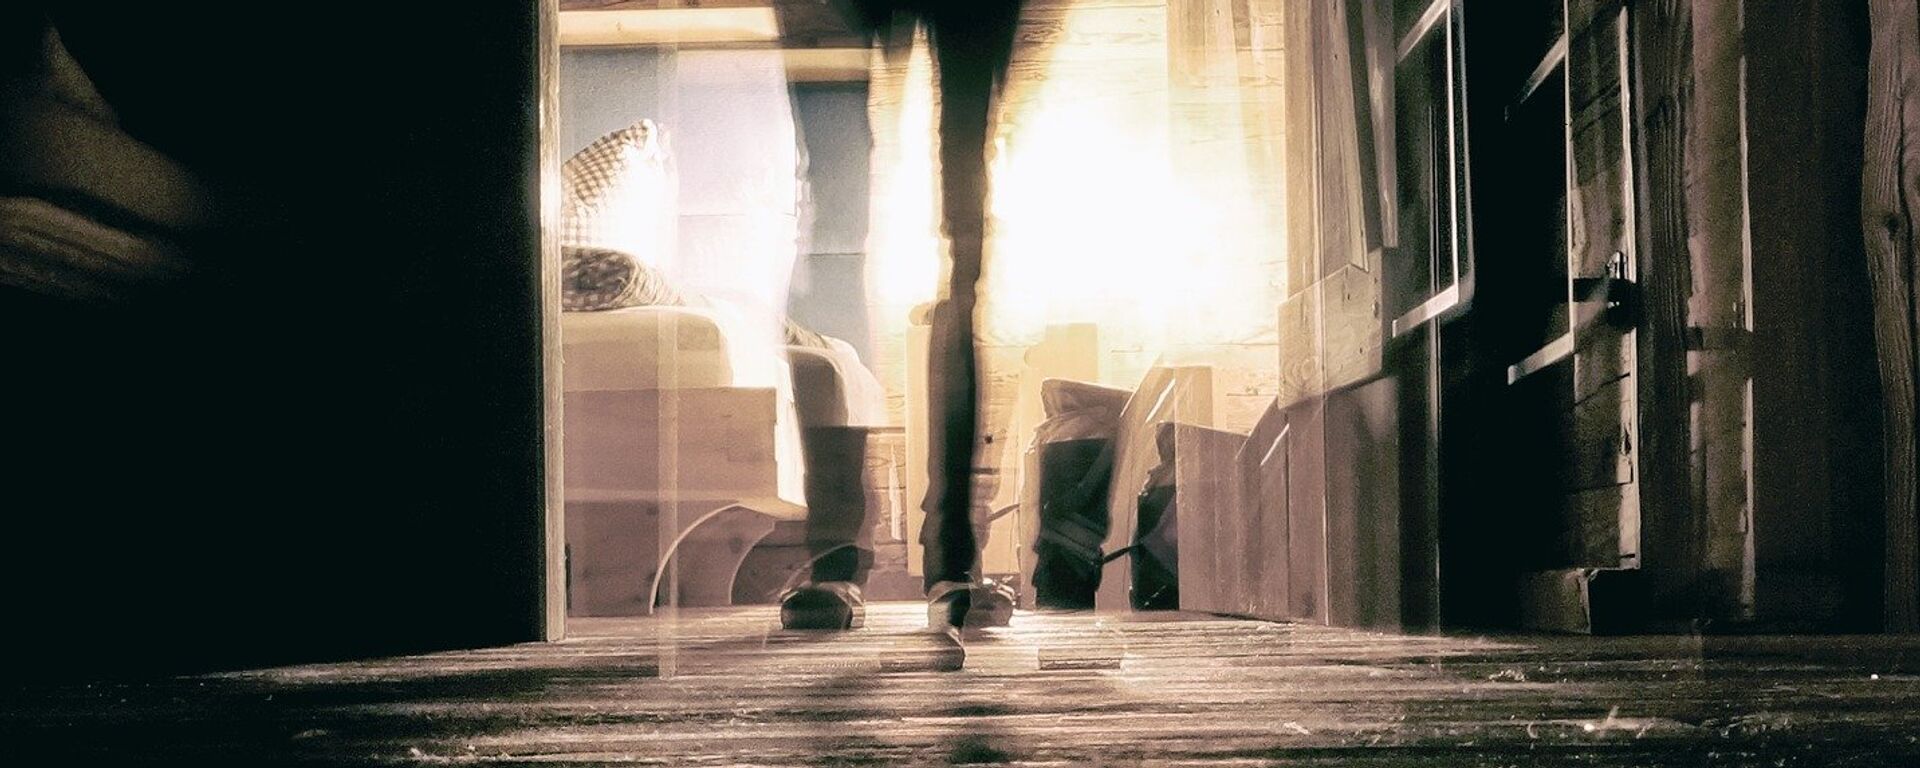 Размытый силуэт девушке в дверном проеме, иллюстративное фото - Sputnik Қазақстан, 1920, 19.11.2020